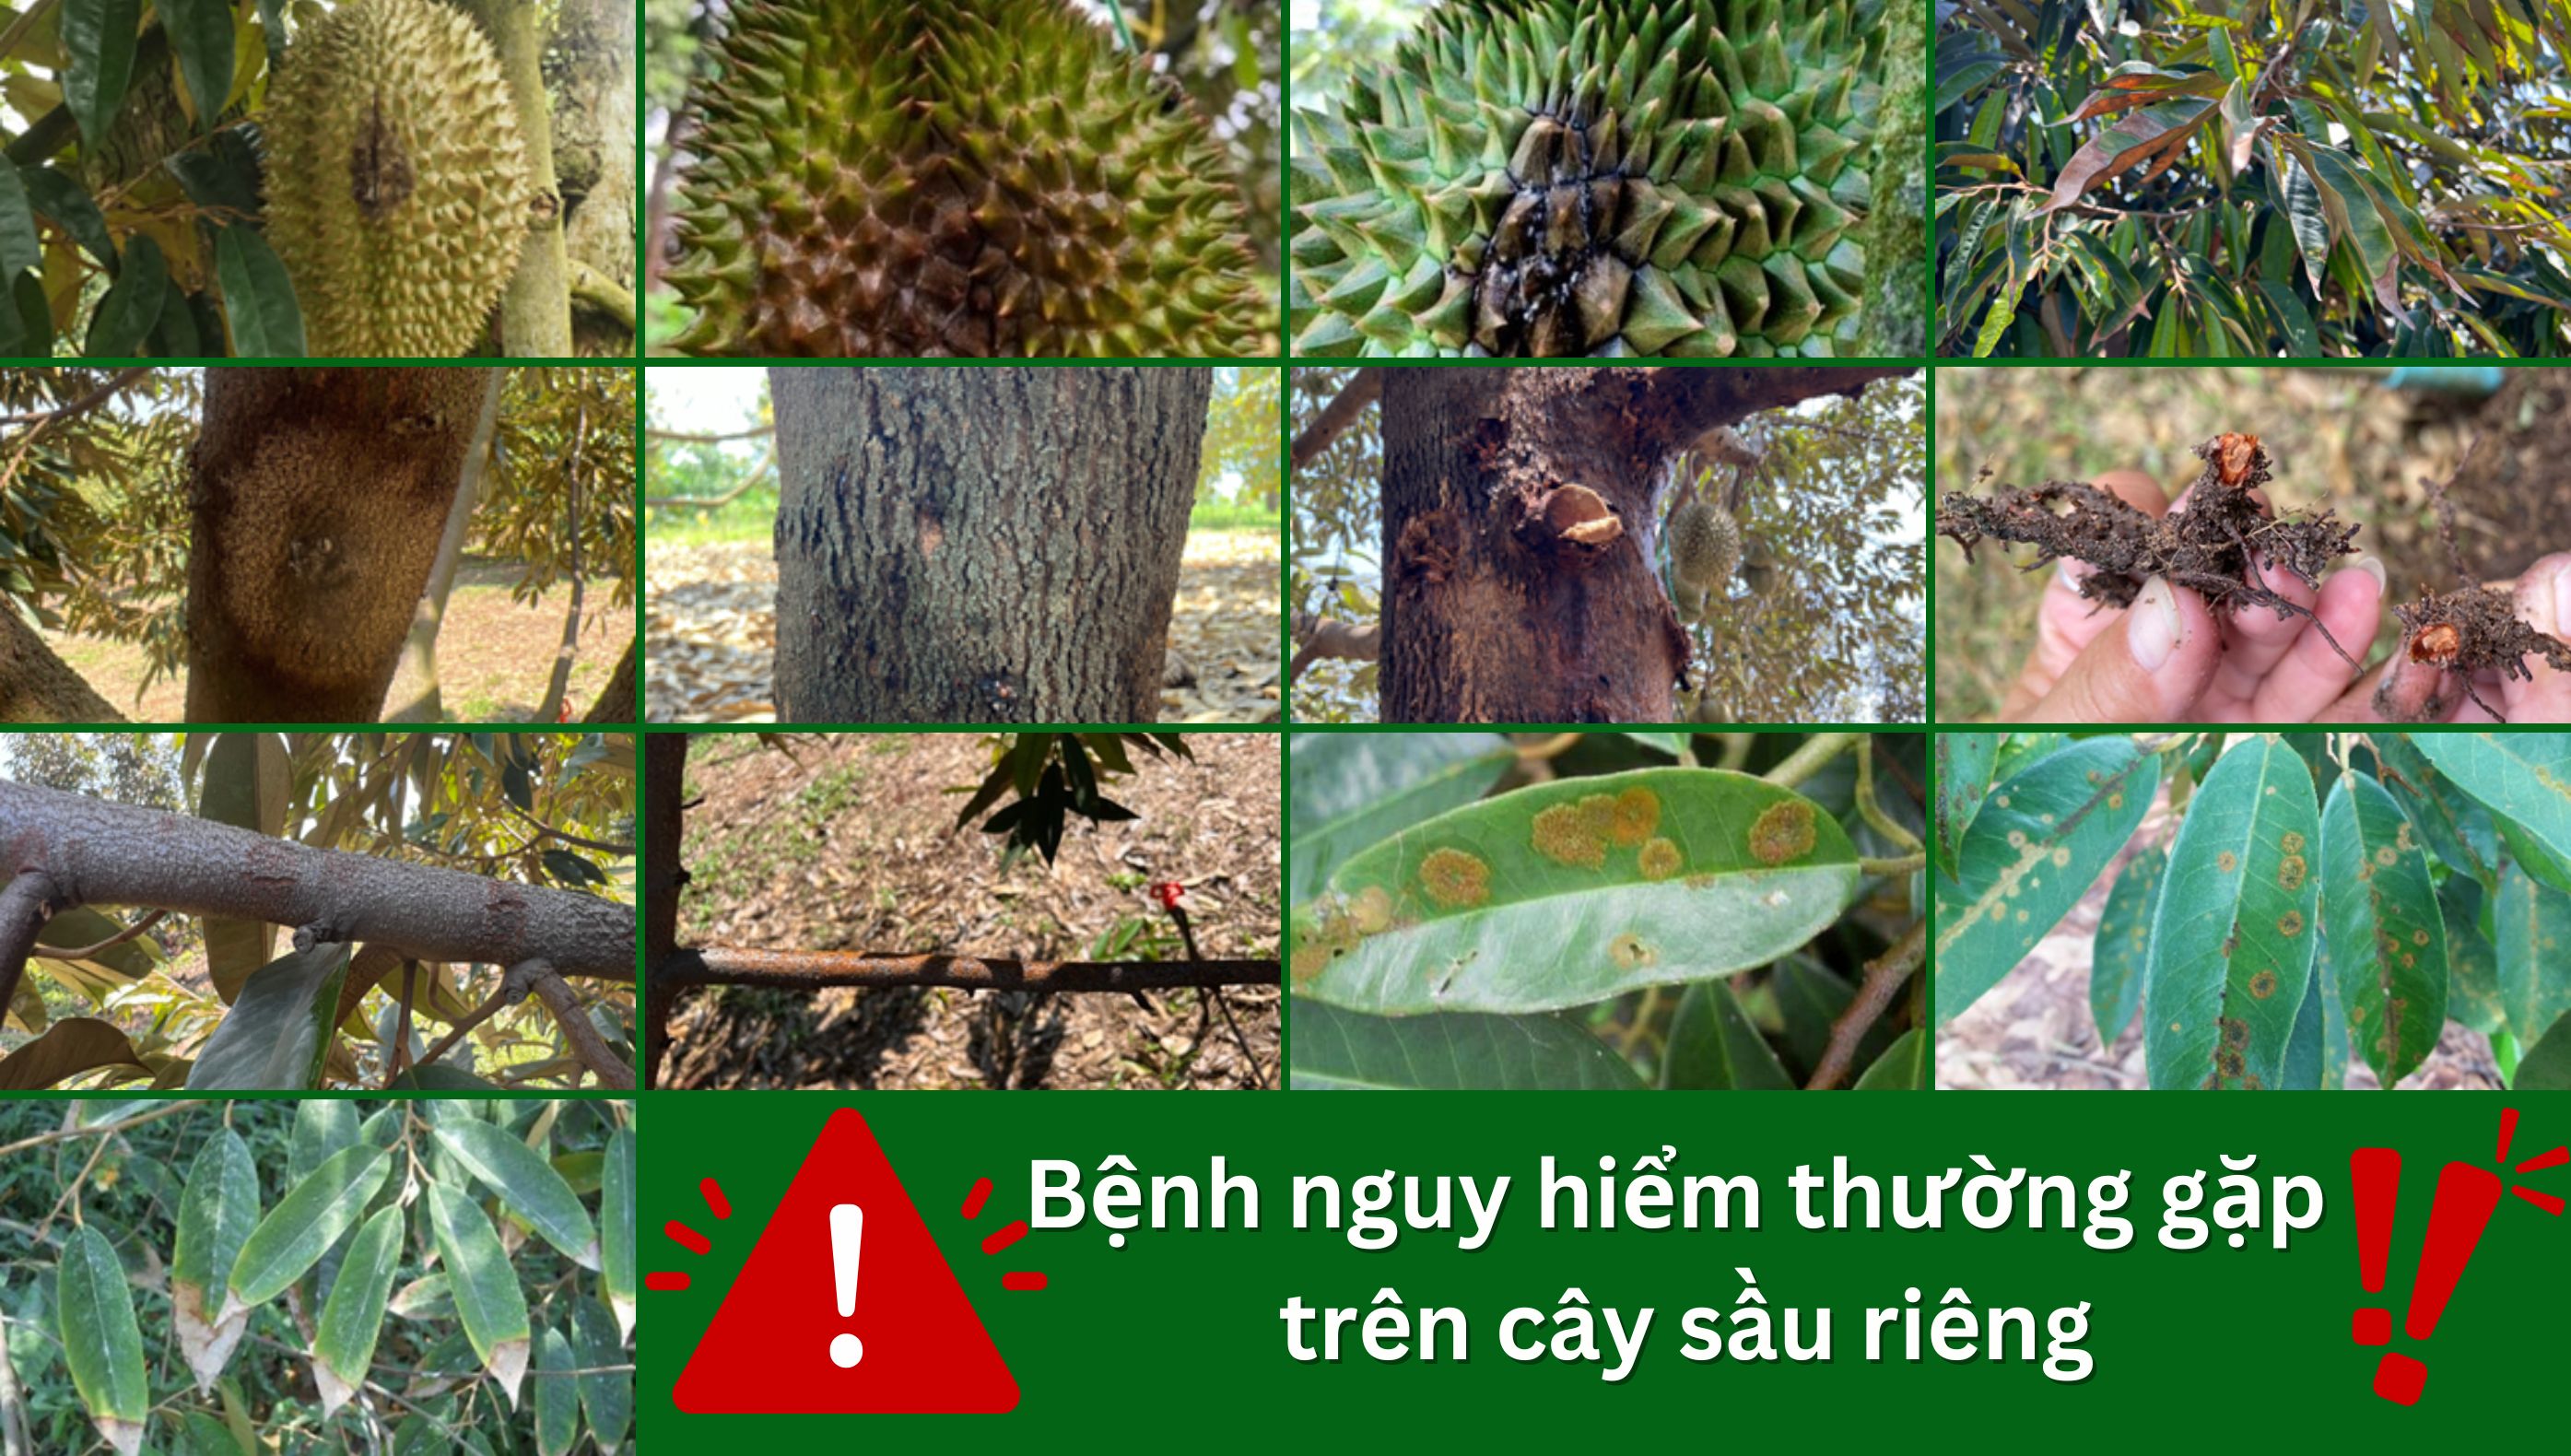 Bệnh trên cây sầu riêng nguy hiểm, thường gặp mùa mưa: Nguyên nhân, triệu chứng và xử lý bệnh